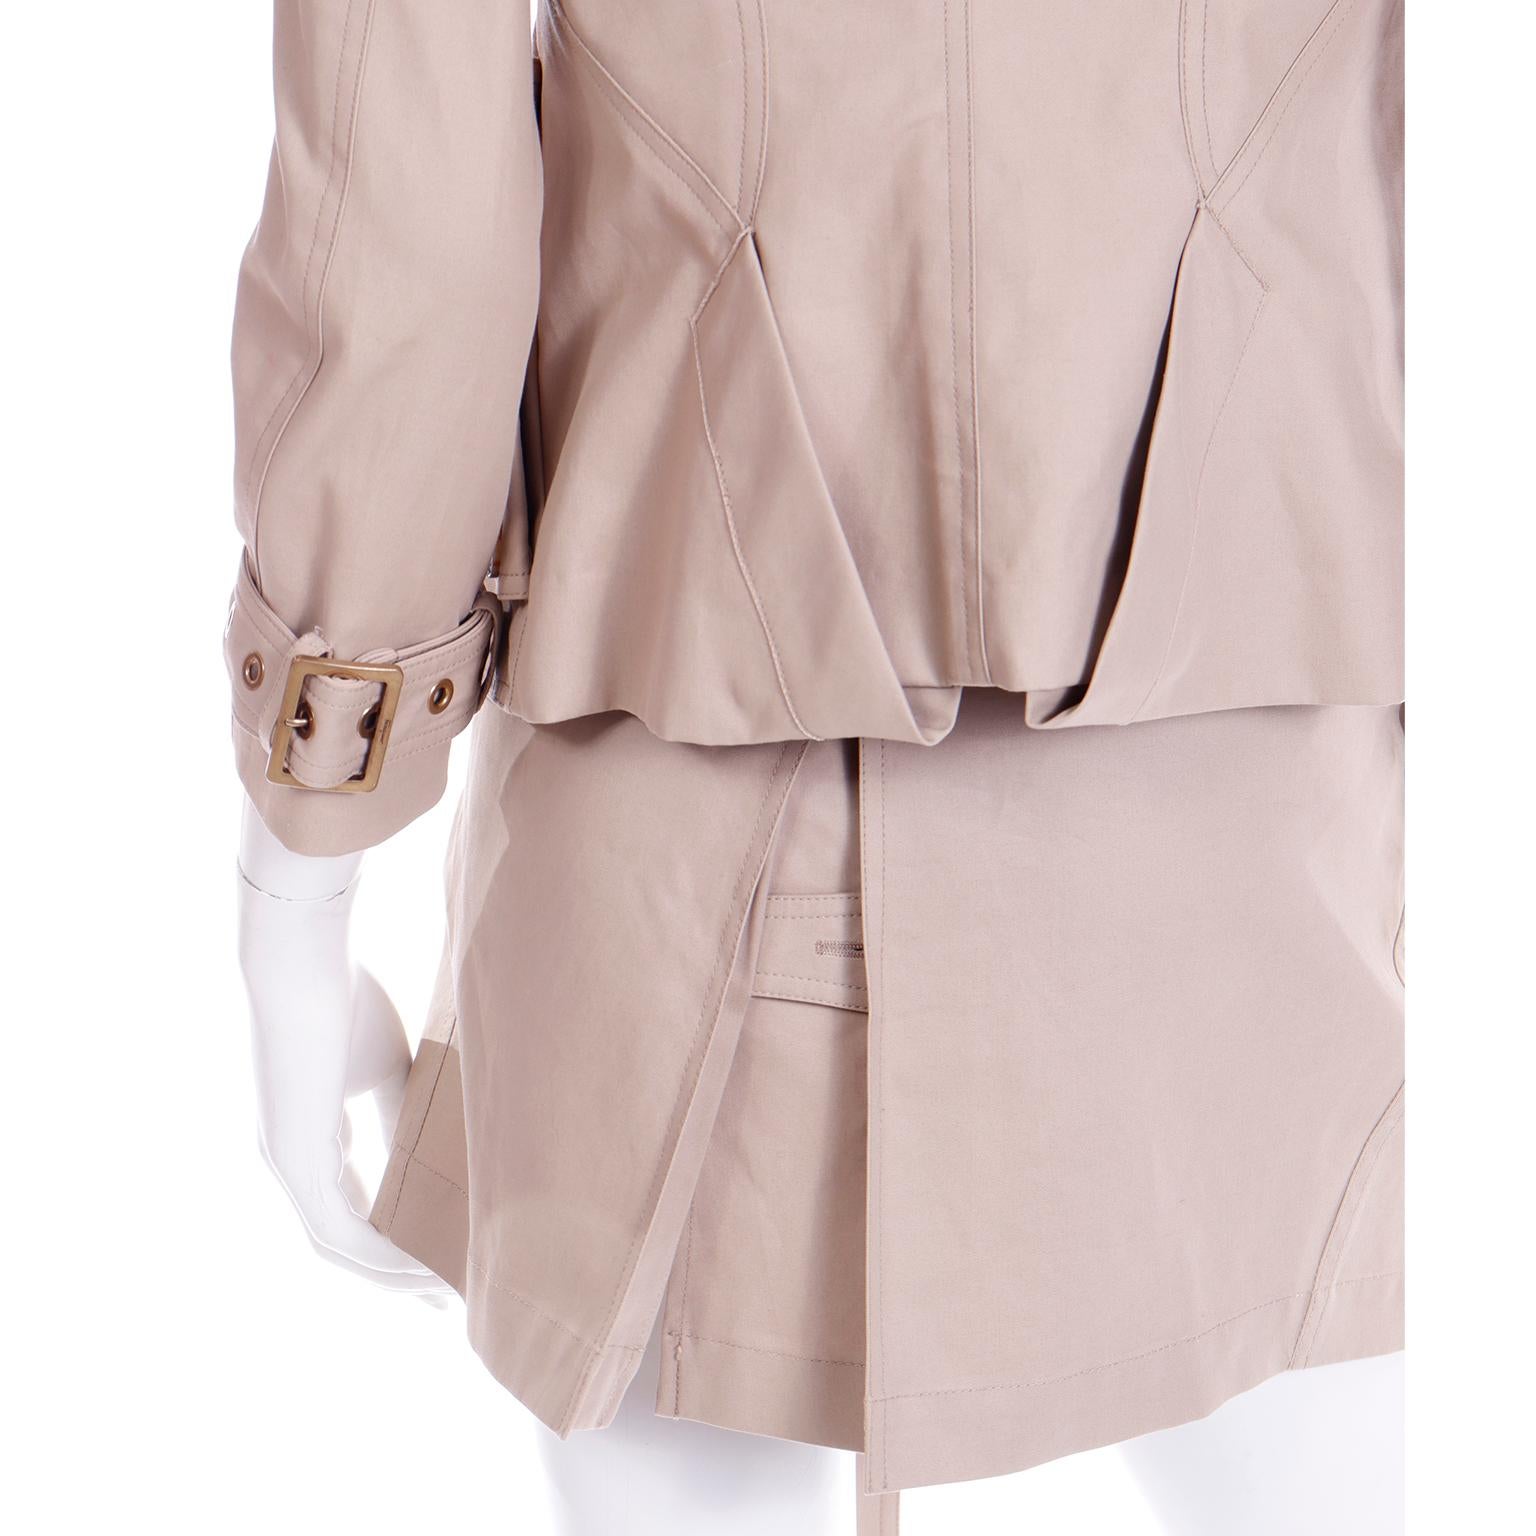 Vintage Salvatore Ferragamo Tan Jacket & Mini Skirt Suit Outfit with Belt 2